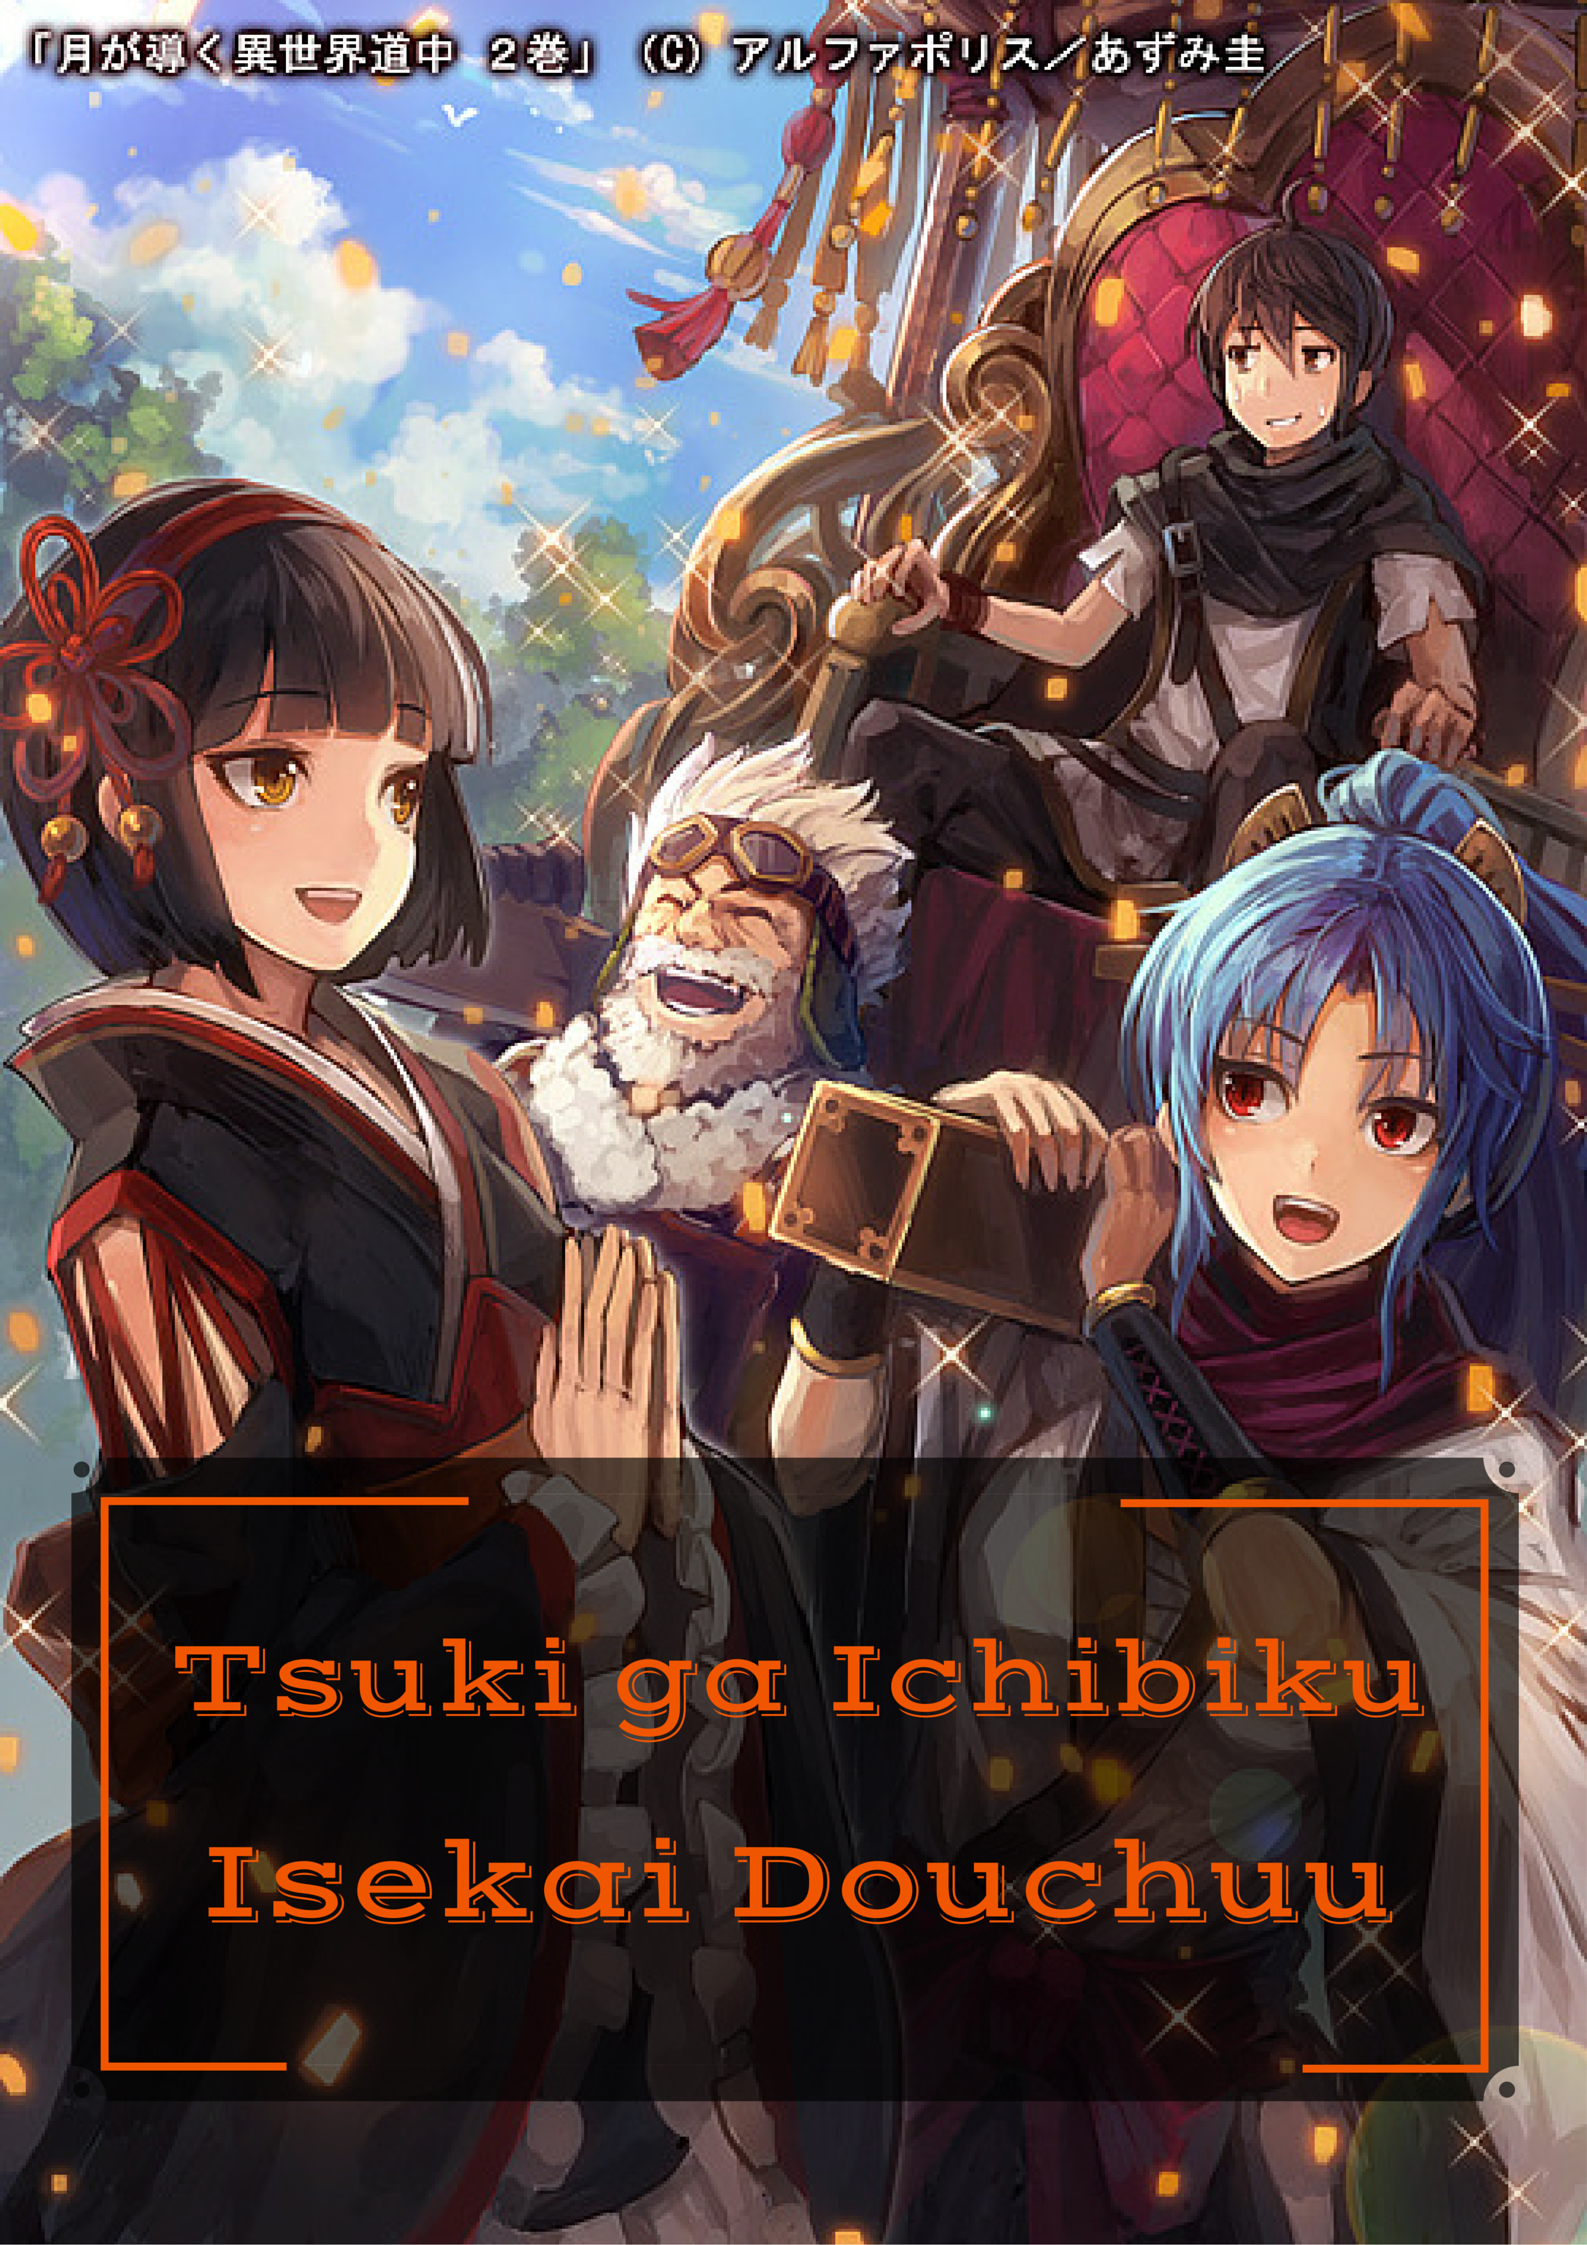 Read Tsuki Ga Michibiku Isekai Douchuu Light Novel Online